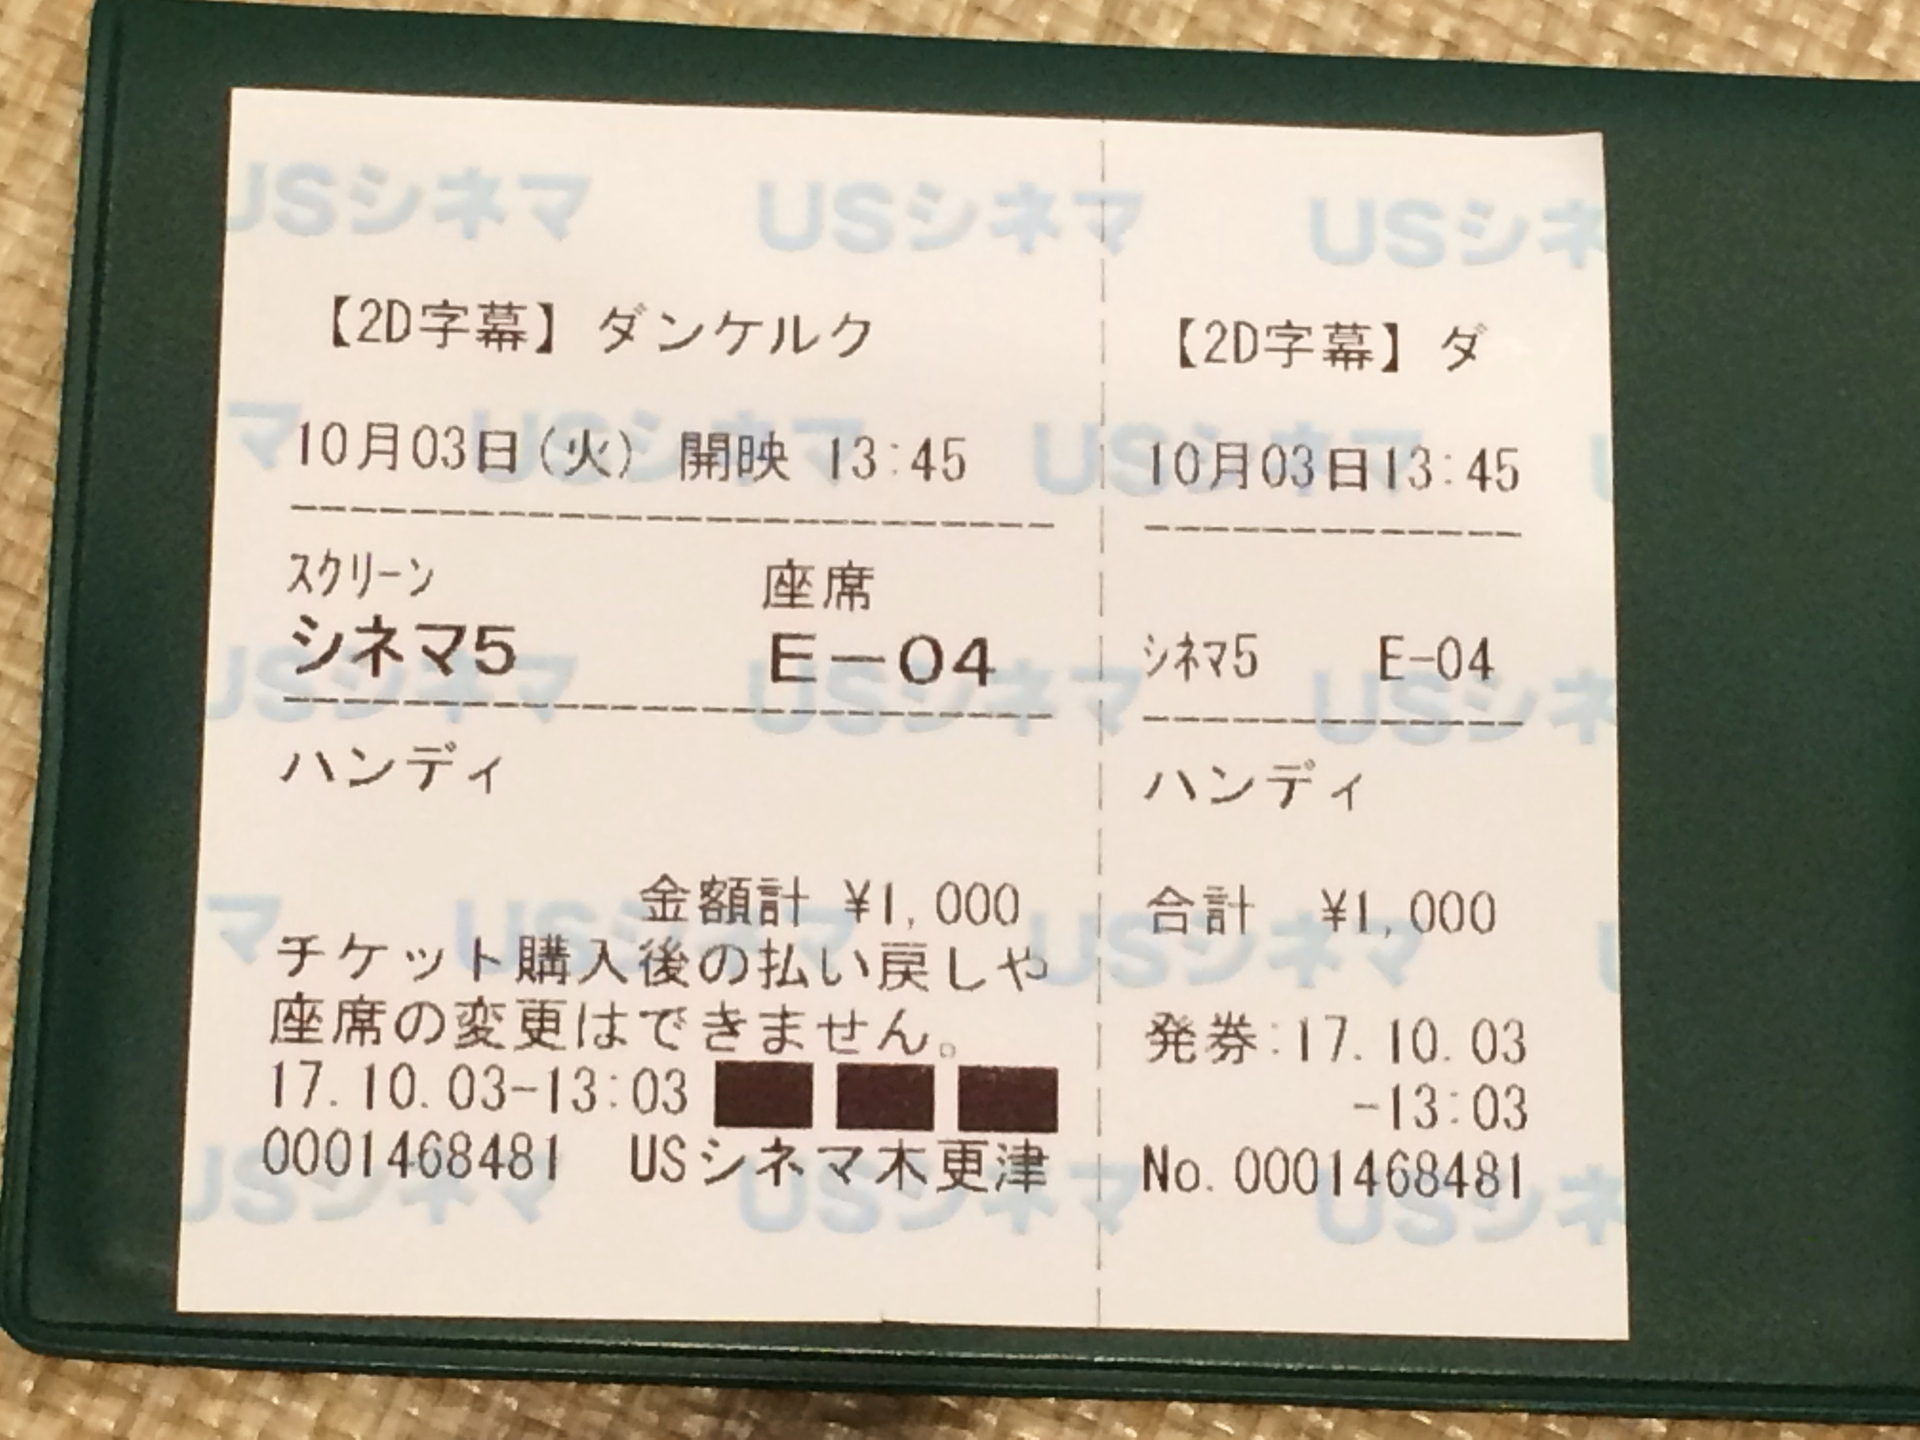 イオンモール木更津の Usシネマで映画を見てきた Ogu S Blog かずさ便り ちょっとだけpcの話も